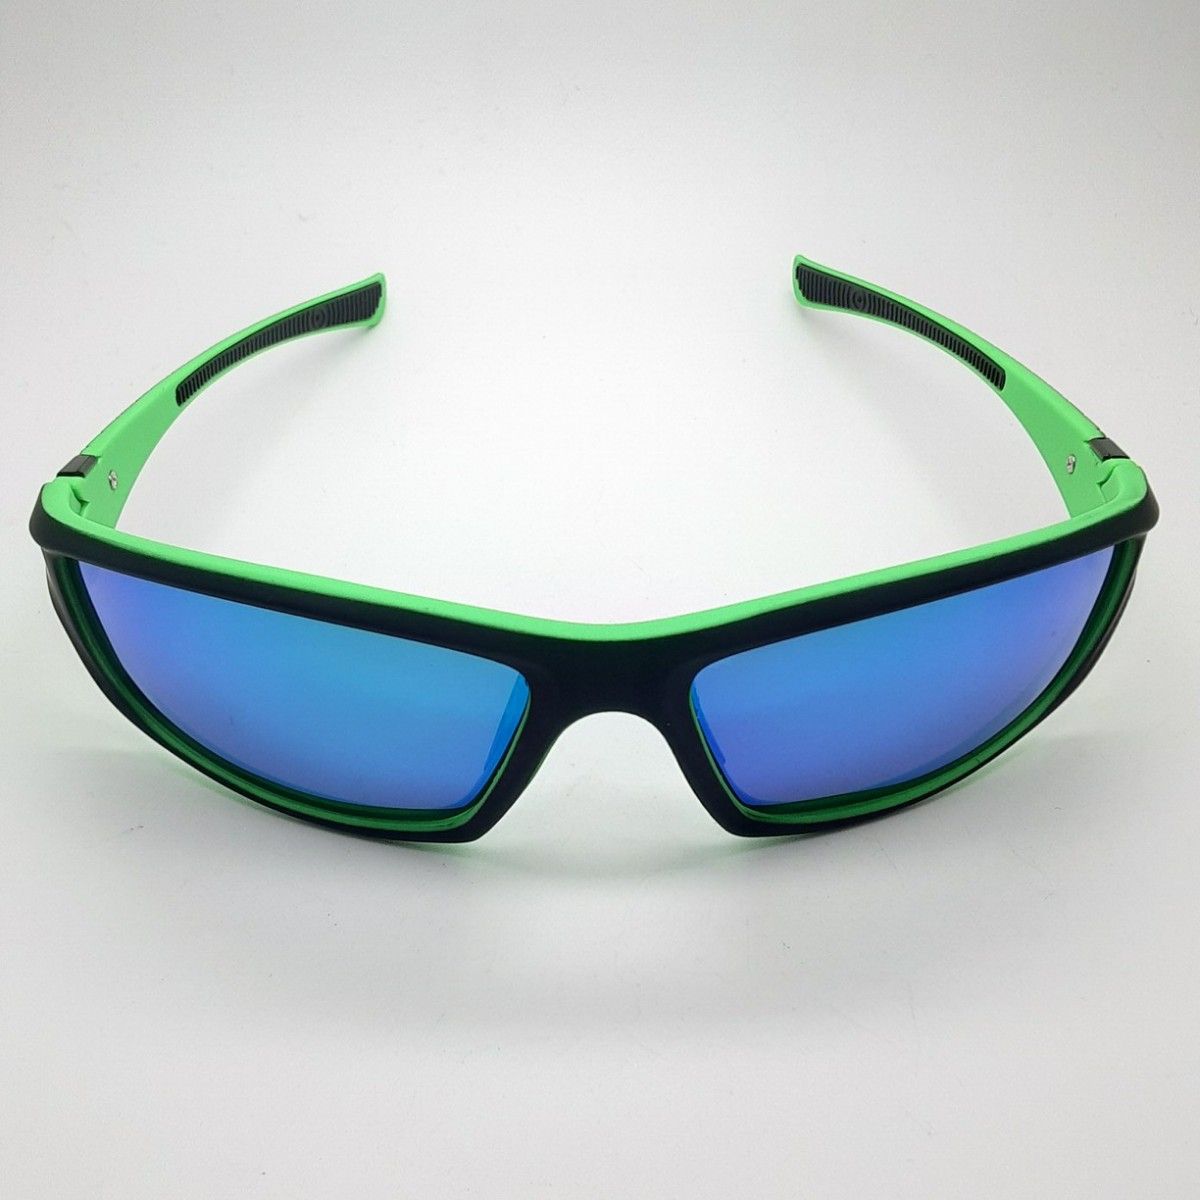 新品 送料込み ライディングメガネUV400 スポーツ サングラス 緑×グリーン